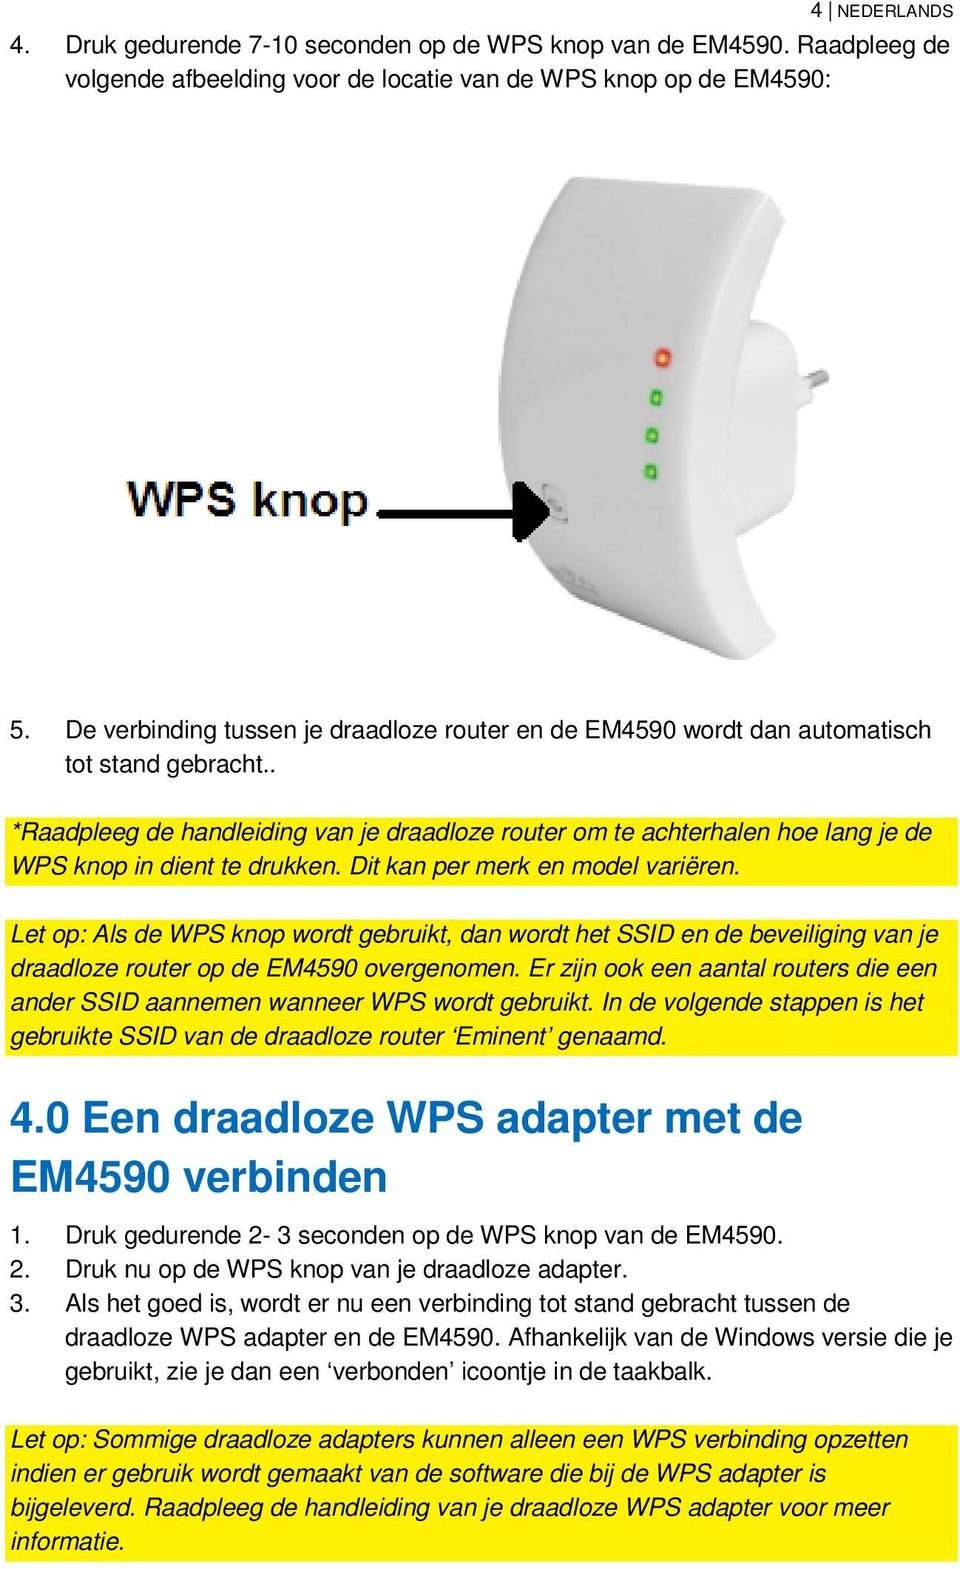 . *Raadpleeg de handleiding van je draadloze router om te achterhalen hoe lang je de WPS knop in dient te drukken. Dit kan per merk en model variëren.